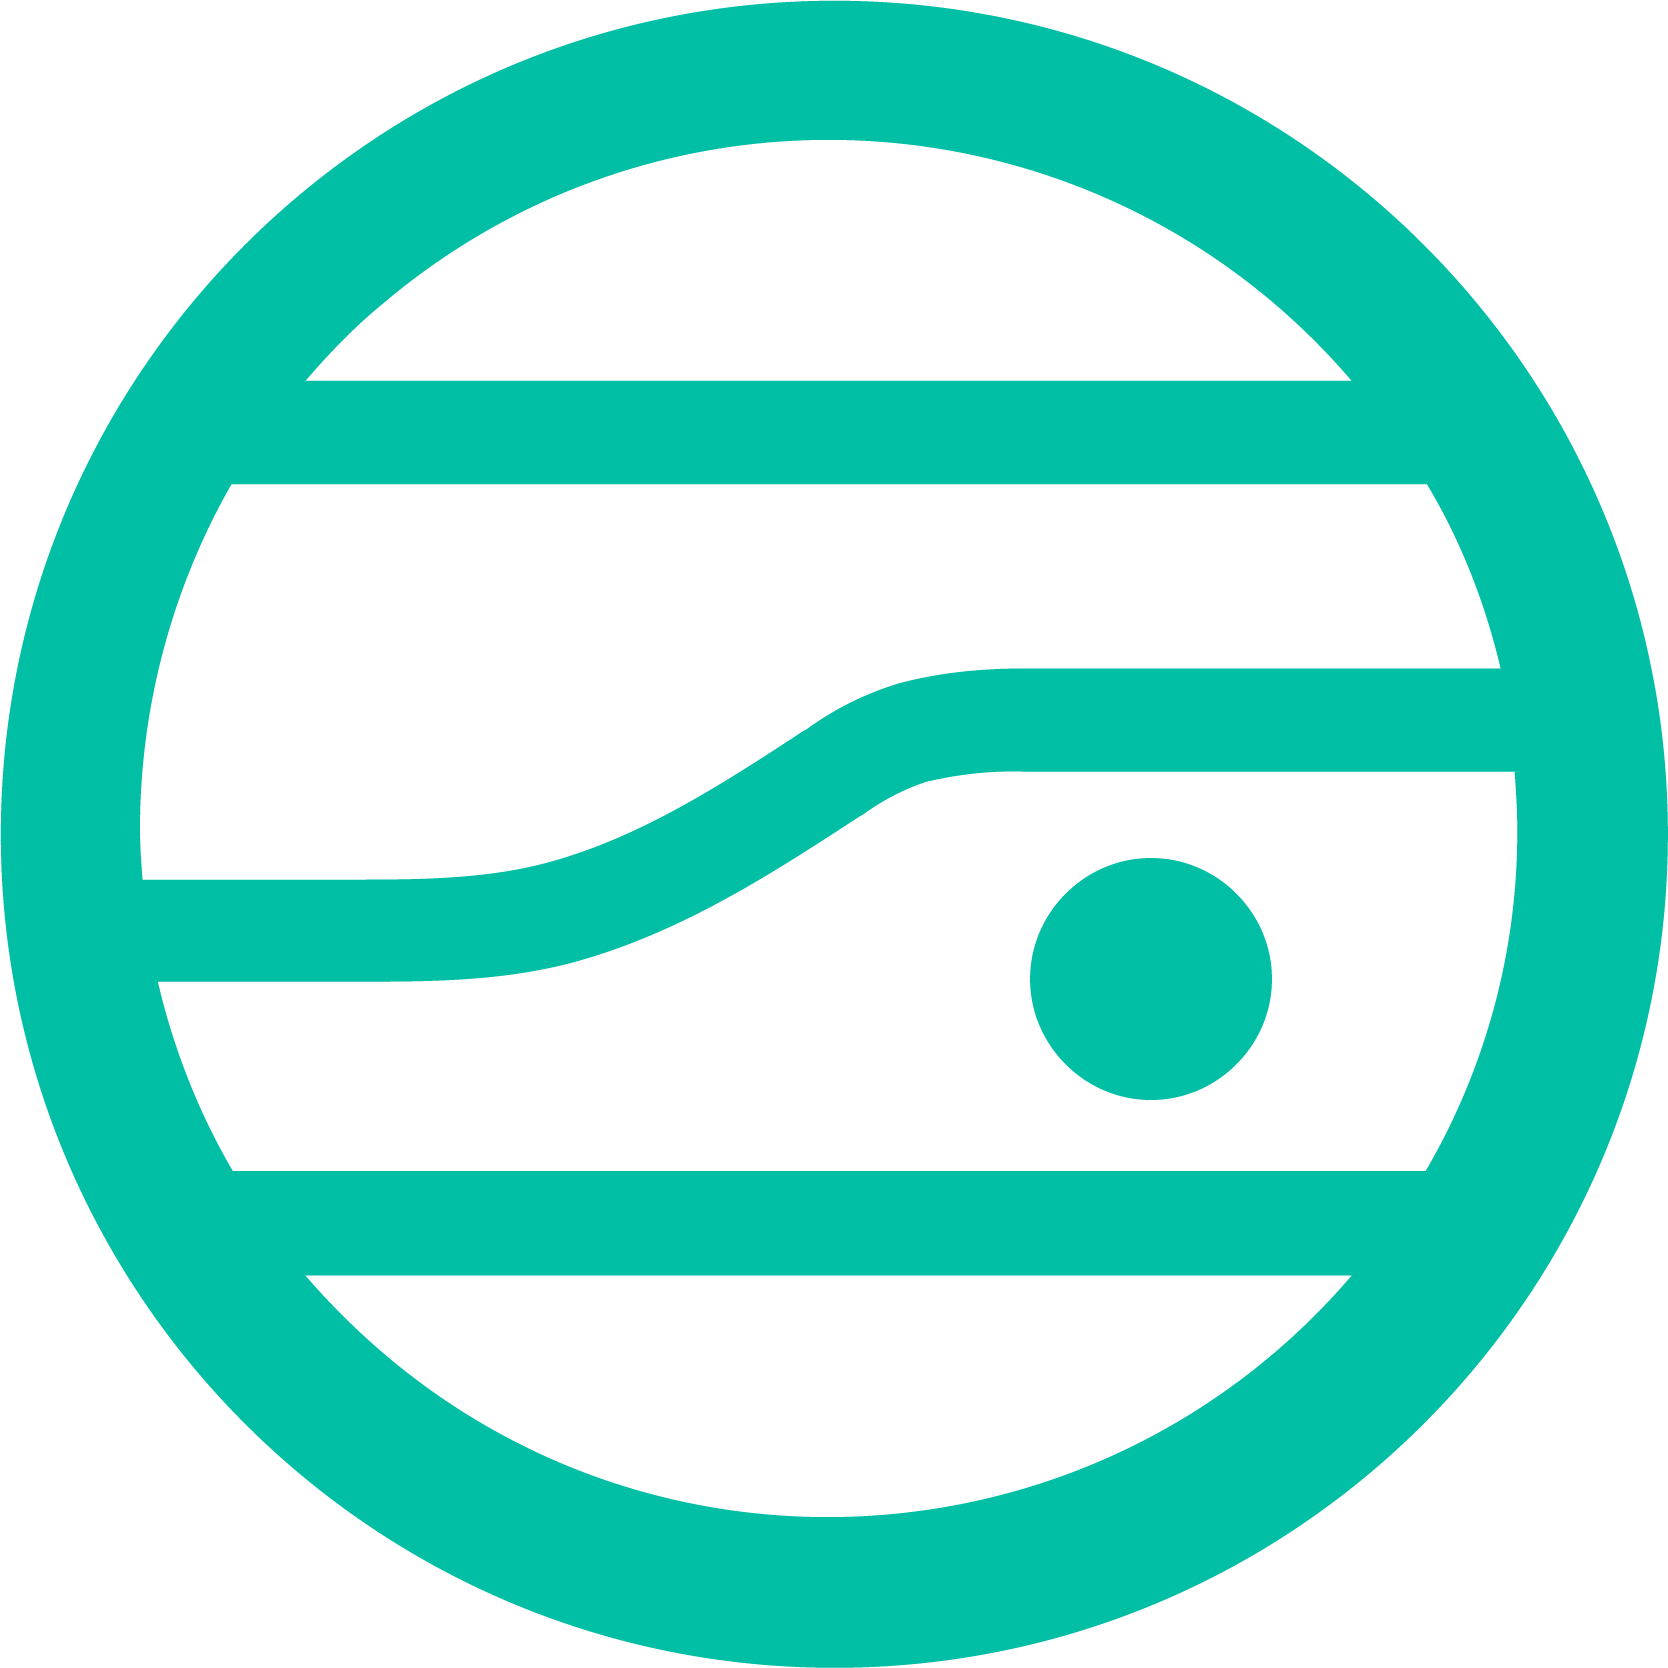 JupiterOne's logo